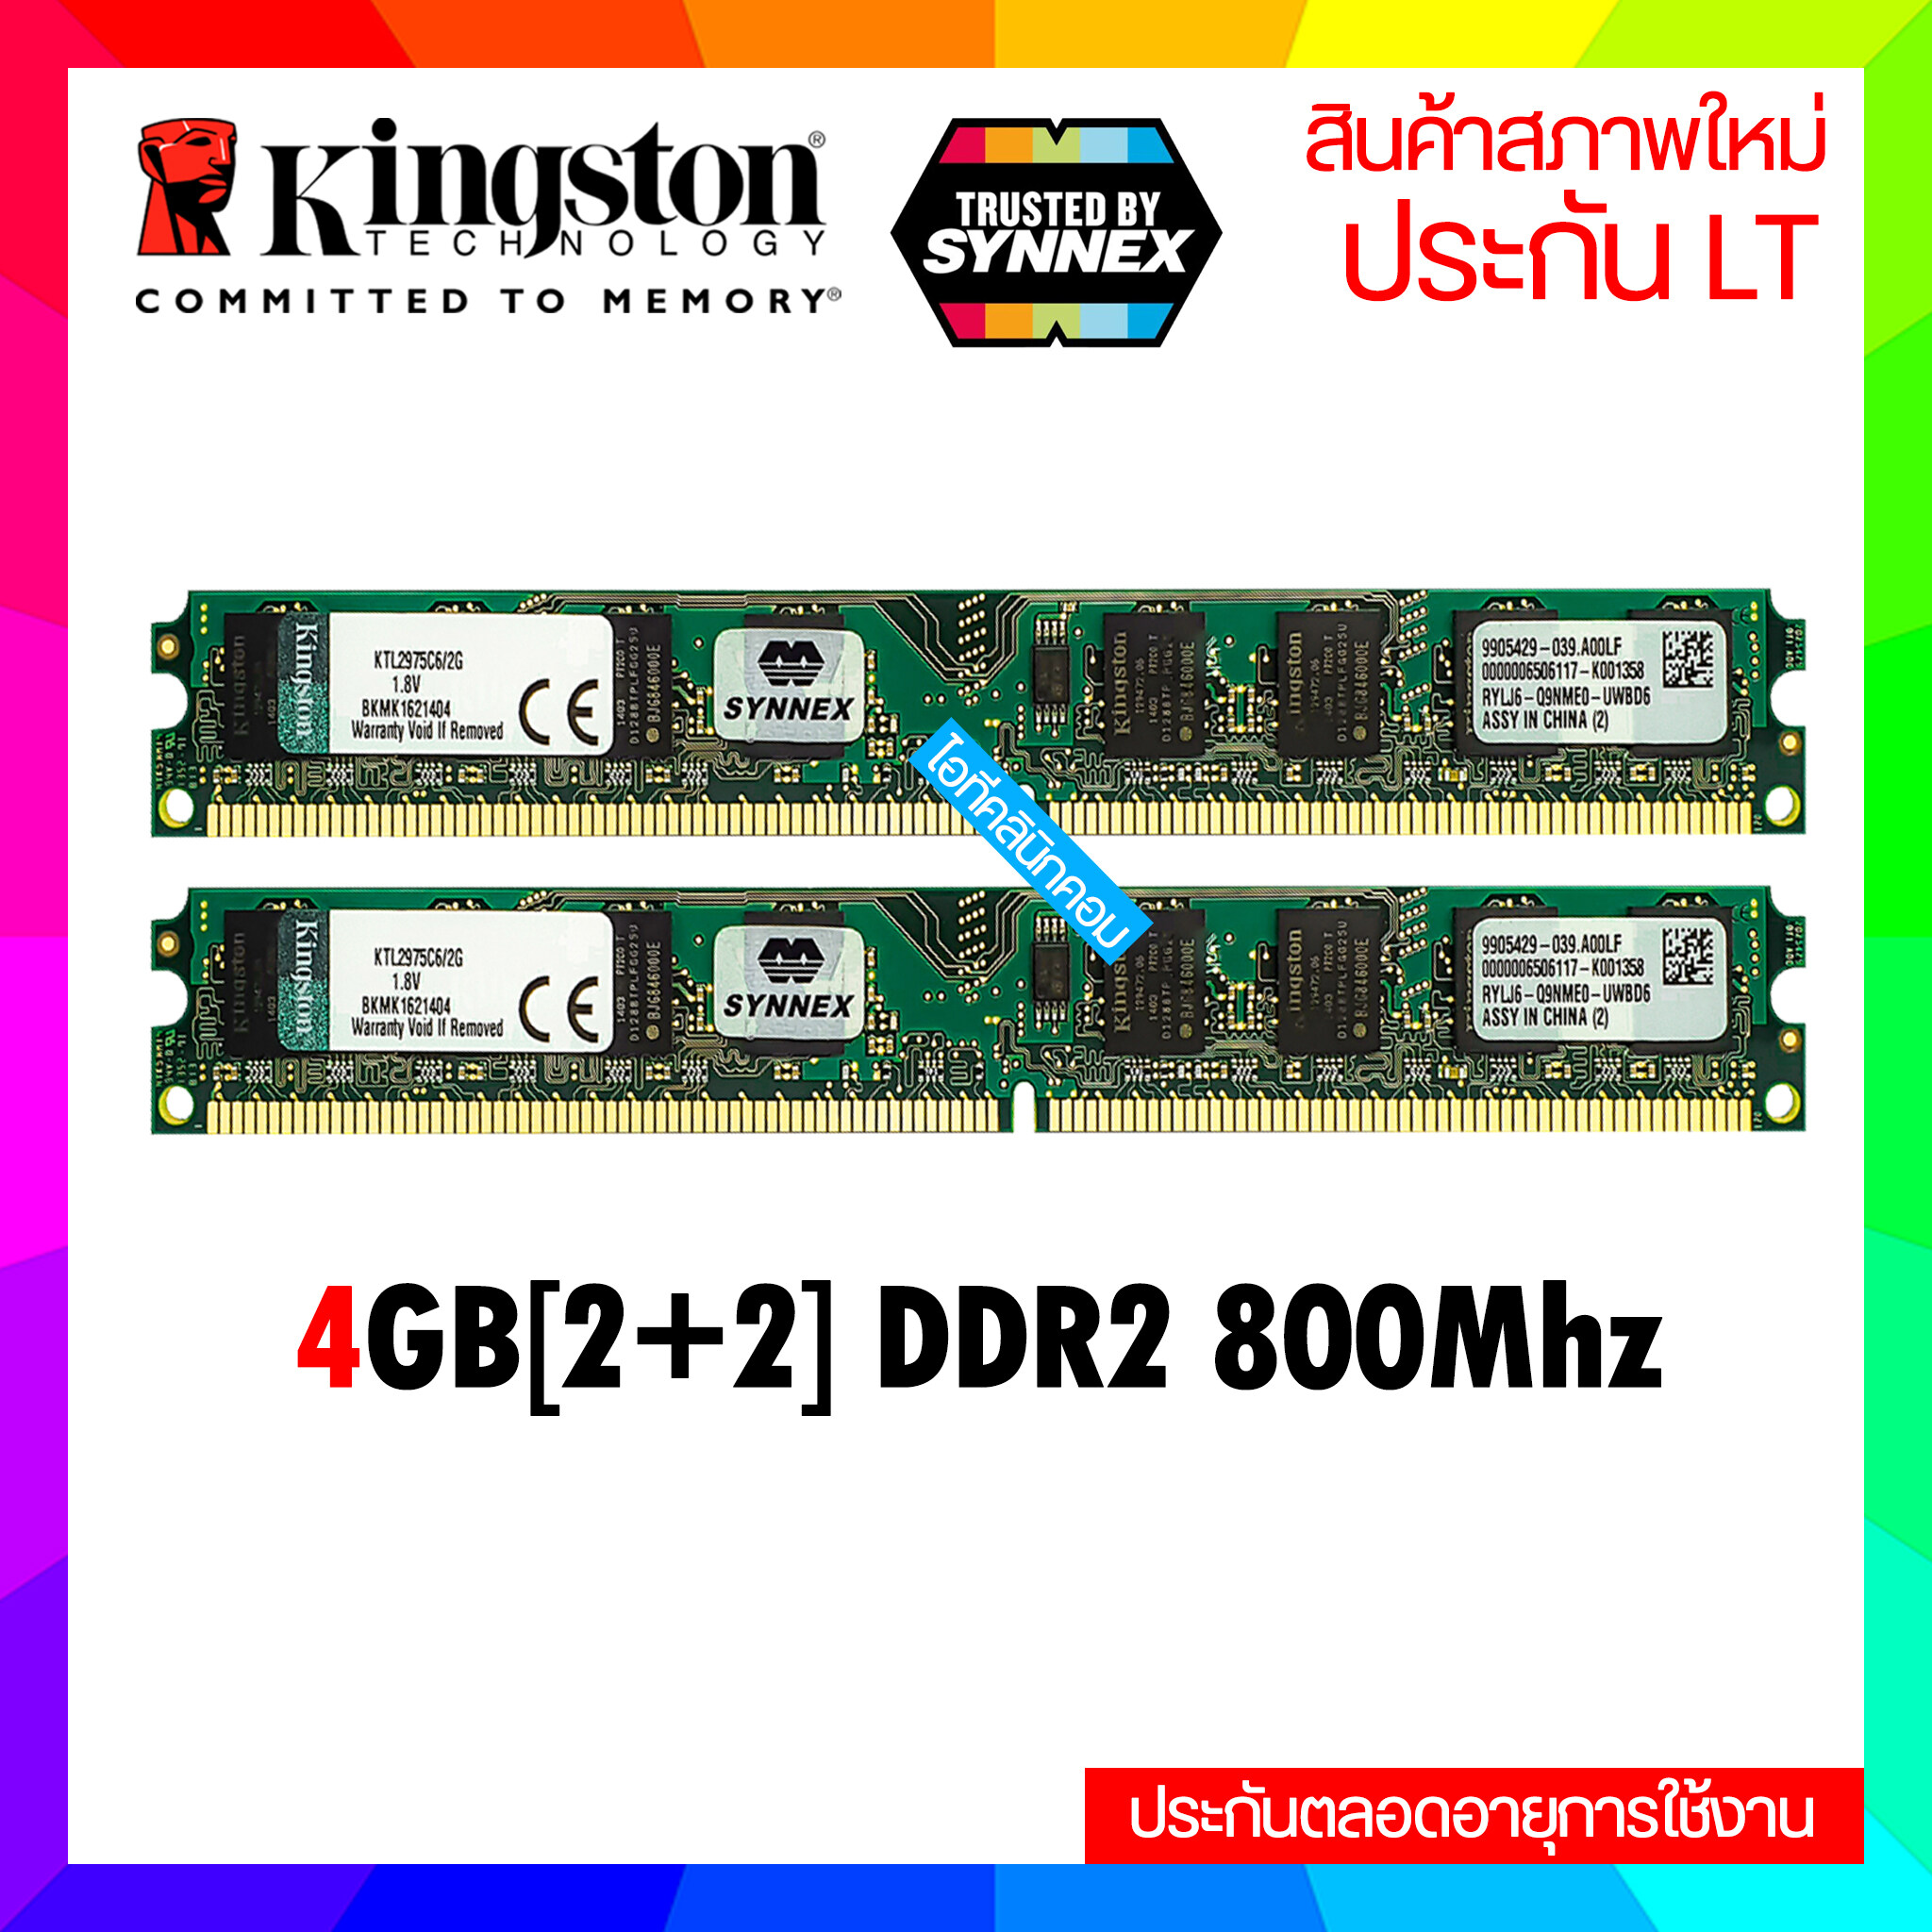 แรมพีซี 4GB (2+2) DDR2 บัส800 ราคาถูกสุด 16ชิป ประกัน LT ตลอดอายุการใช้งาน